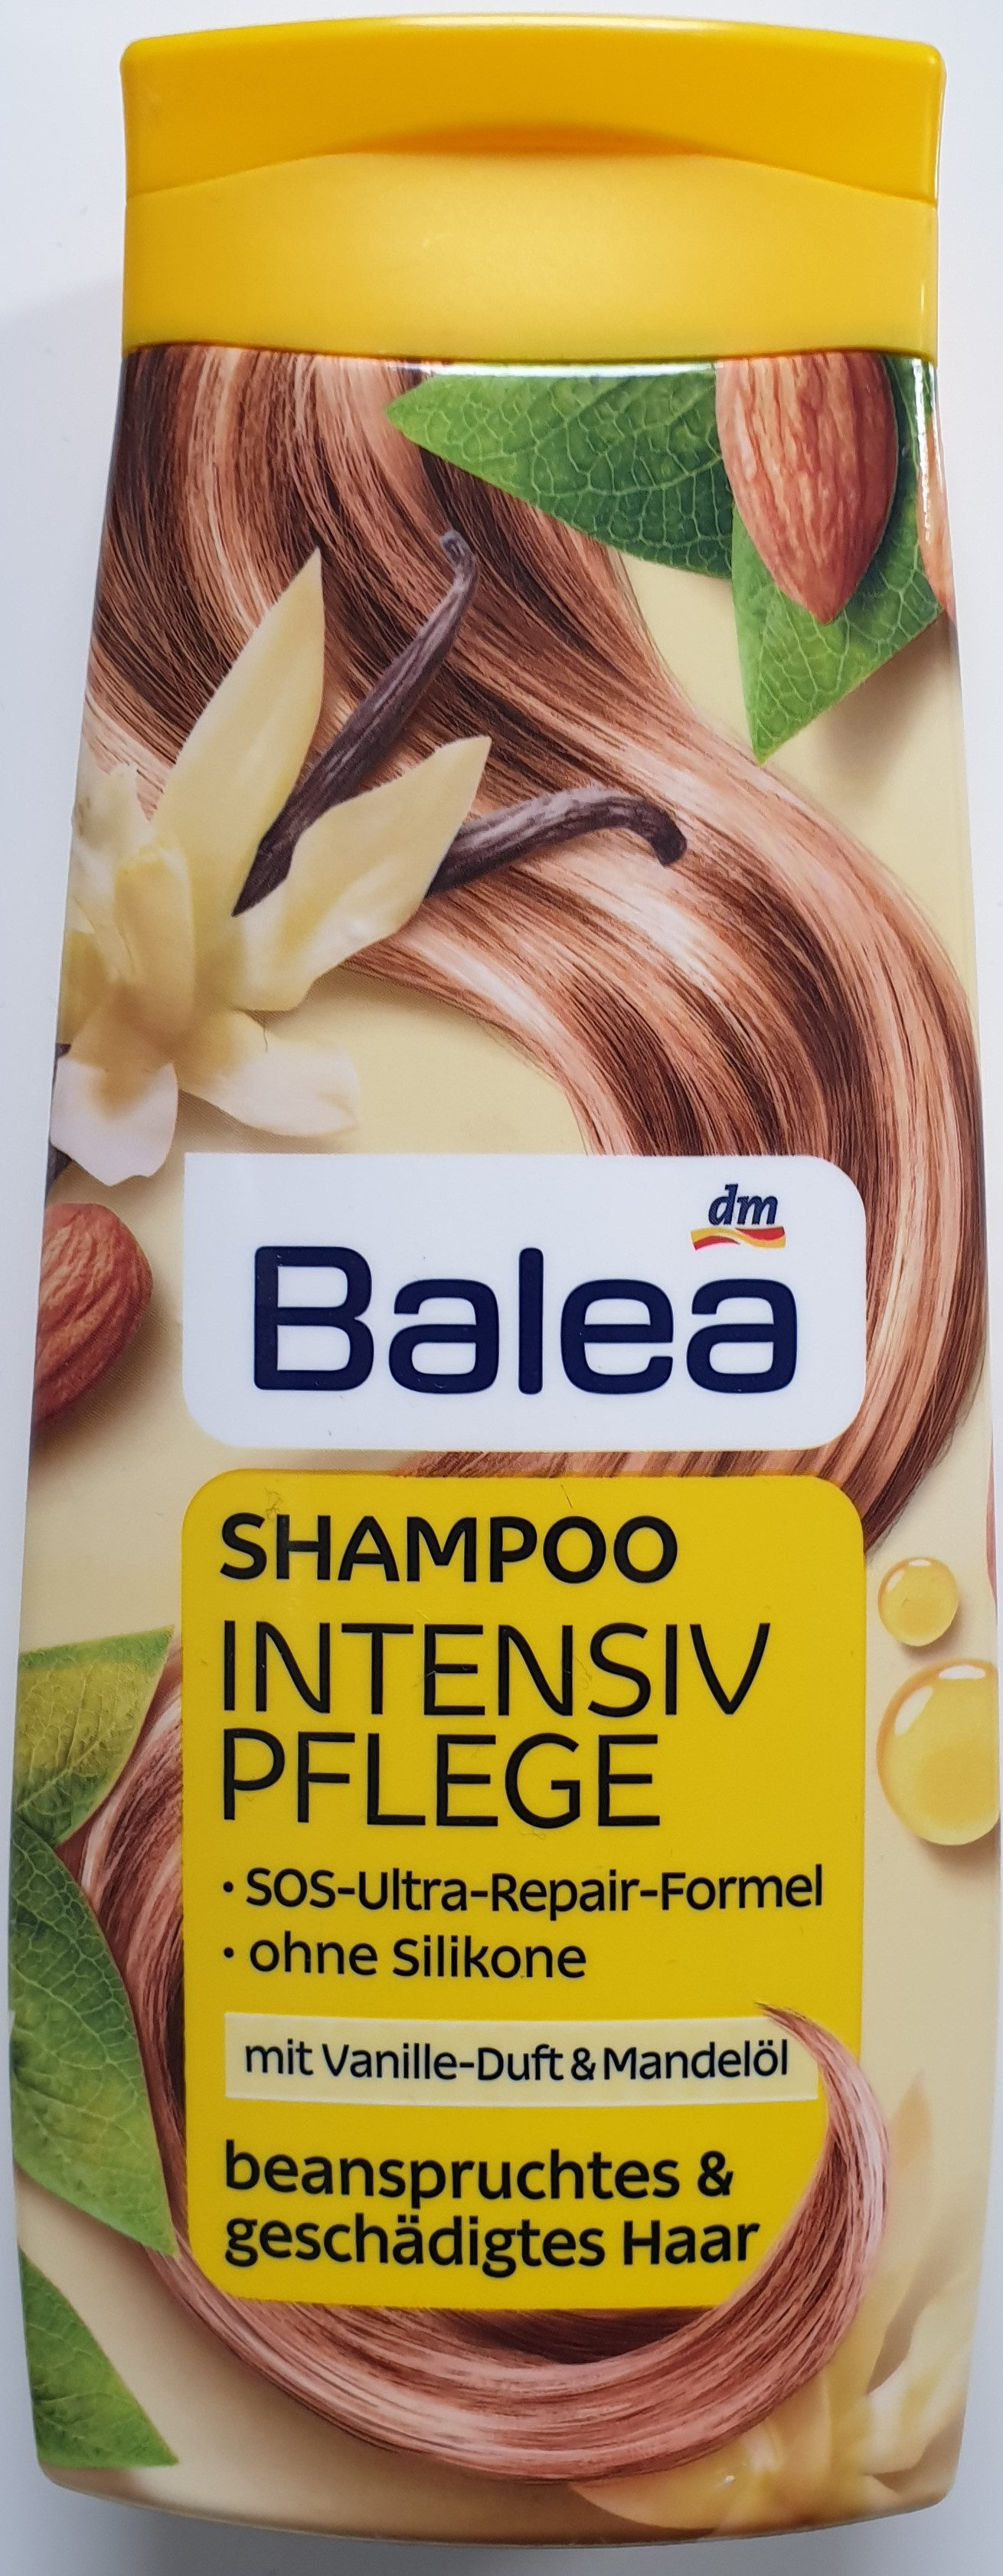 Shampoo Intensiv Pflege mit Vanille-Duft und Mandelöl - Product - de